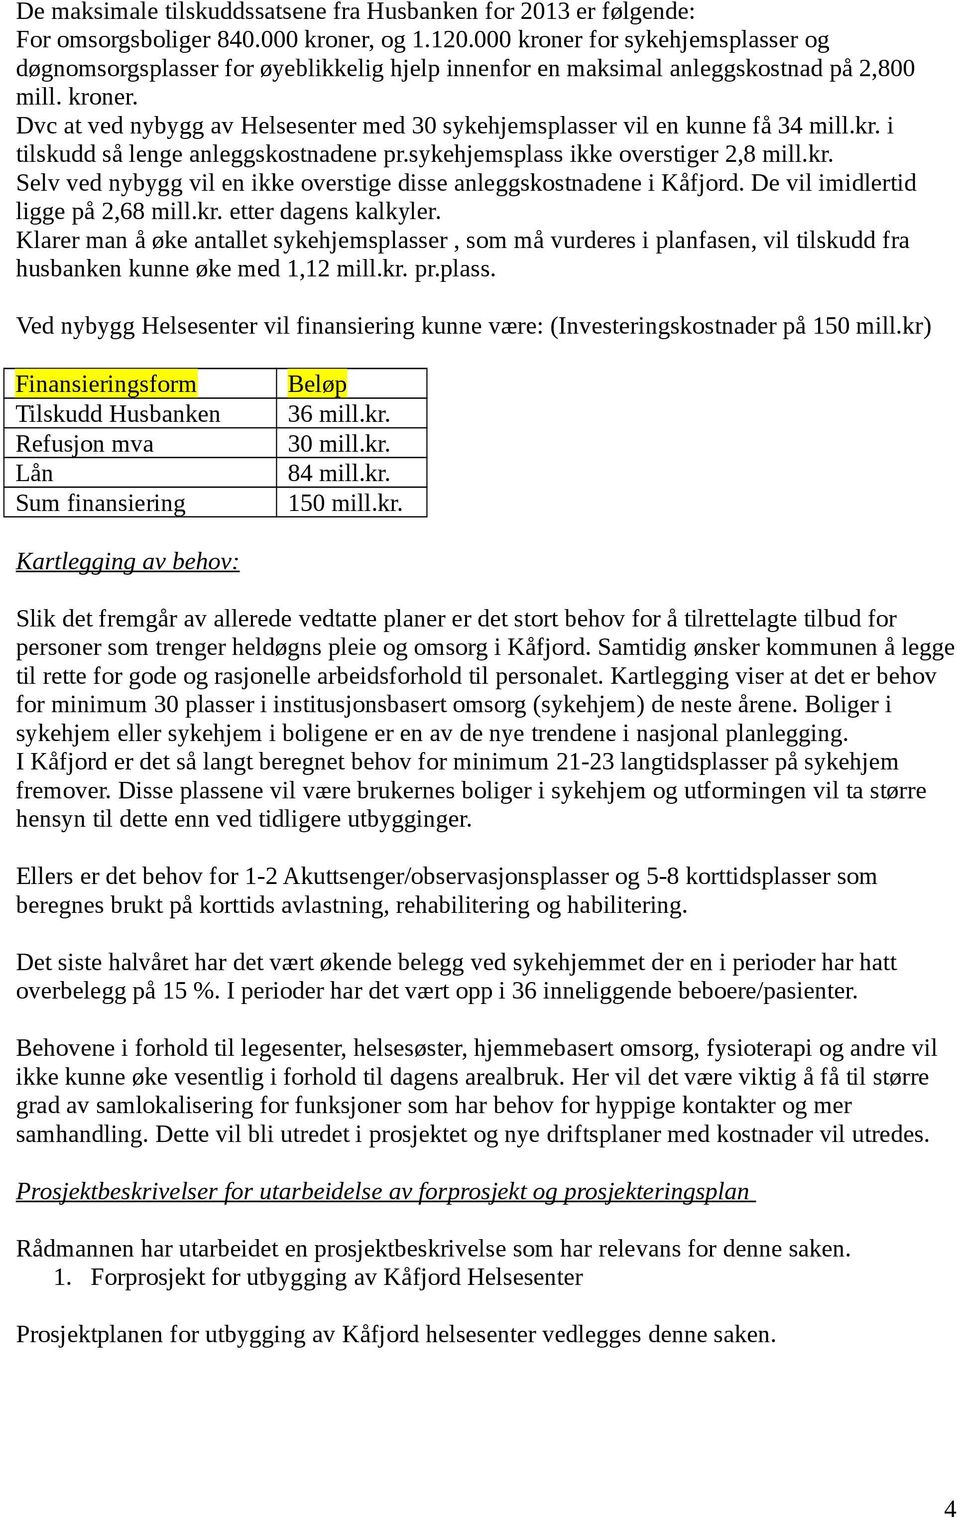 kr. i tilskudd så lenge anleggskostnadene pr.sykehjemsplass ikke overstiger 2,8 mill.kr. Selv ved nybygg vil en ikke overstige disse anleggskostnadene i Kåfjord. De vil imidlertid ligge på 2,68 mill.